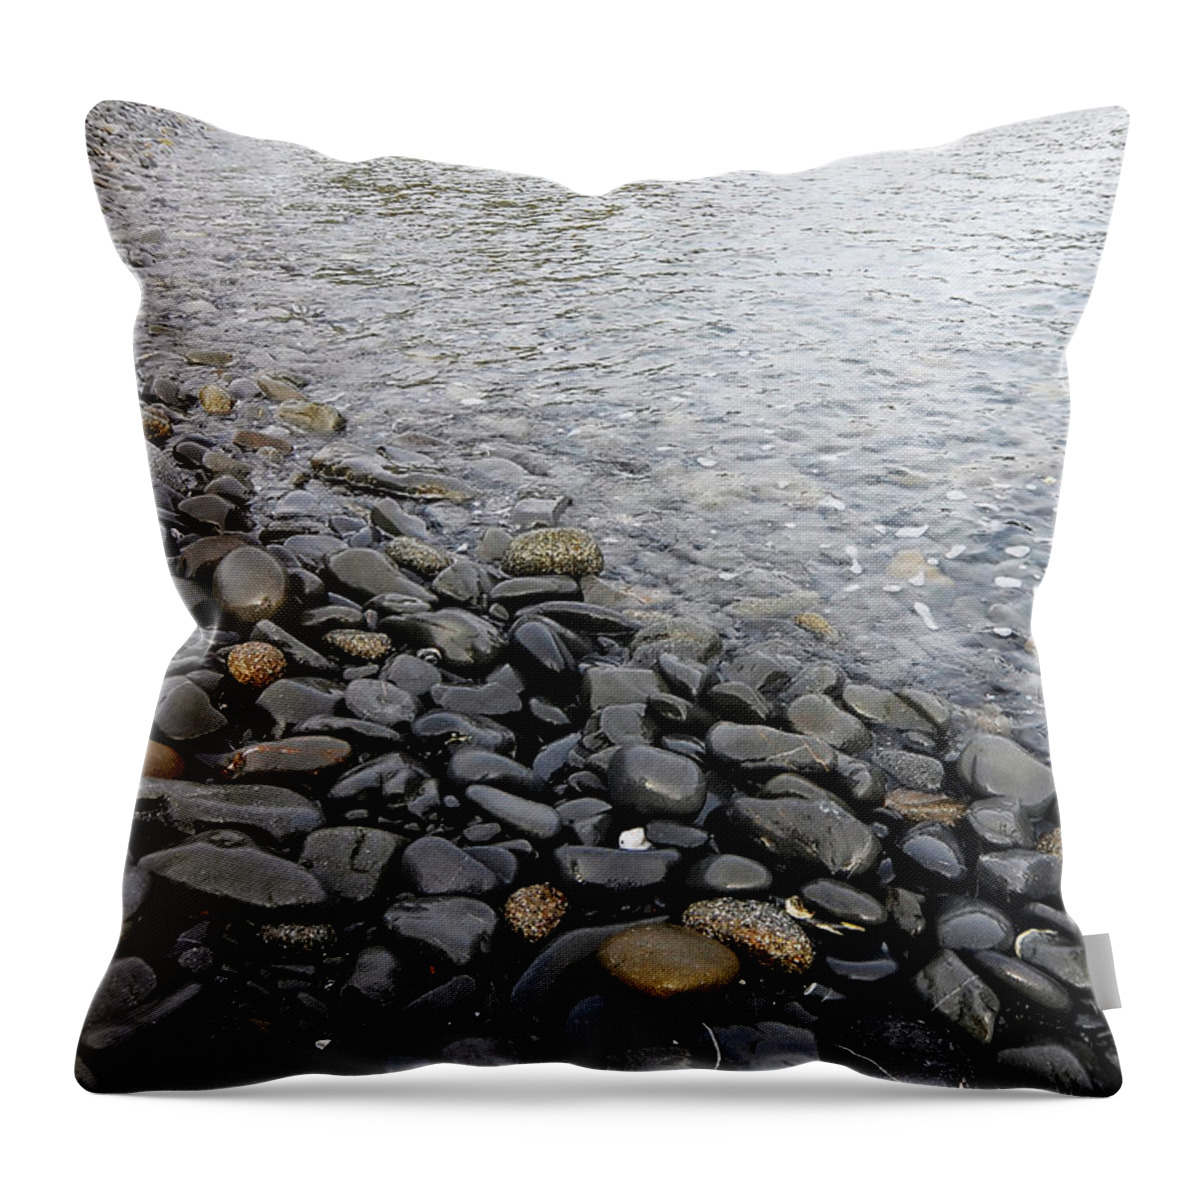 Simplicity Throw Pillow featuring the photograph Menorca pebble beach by Pedro Cardona Llambias